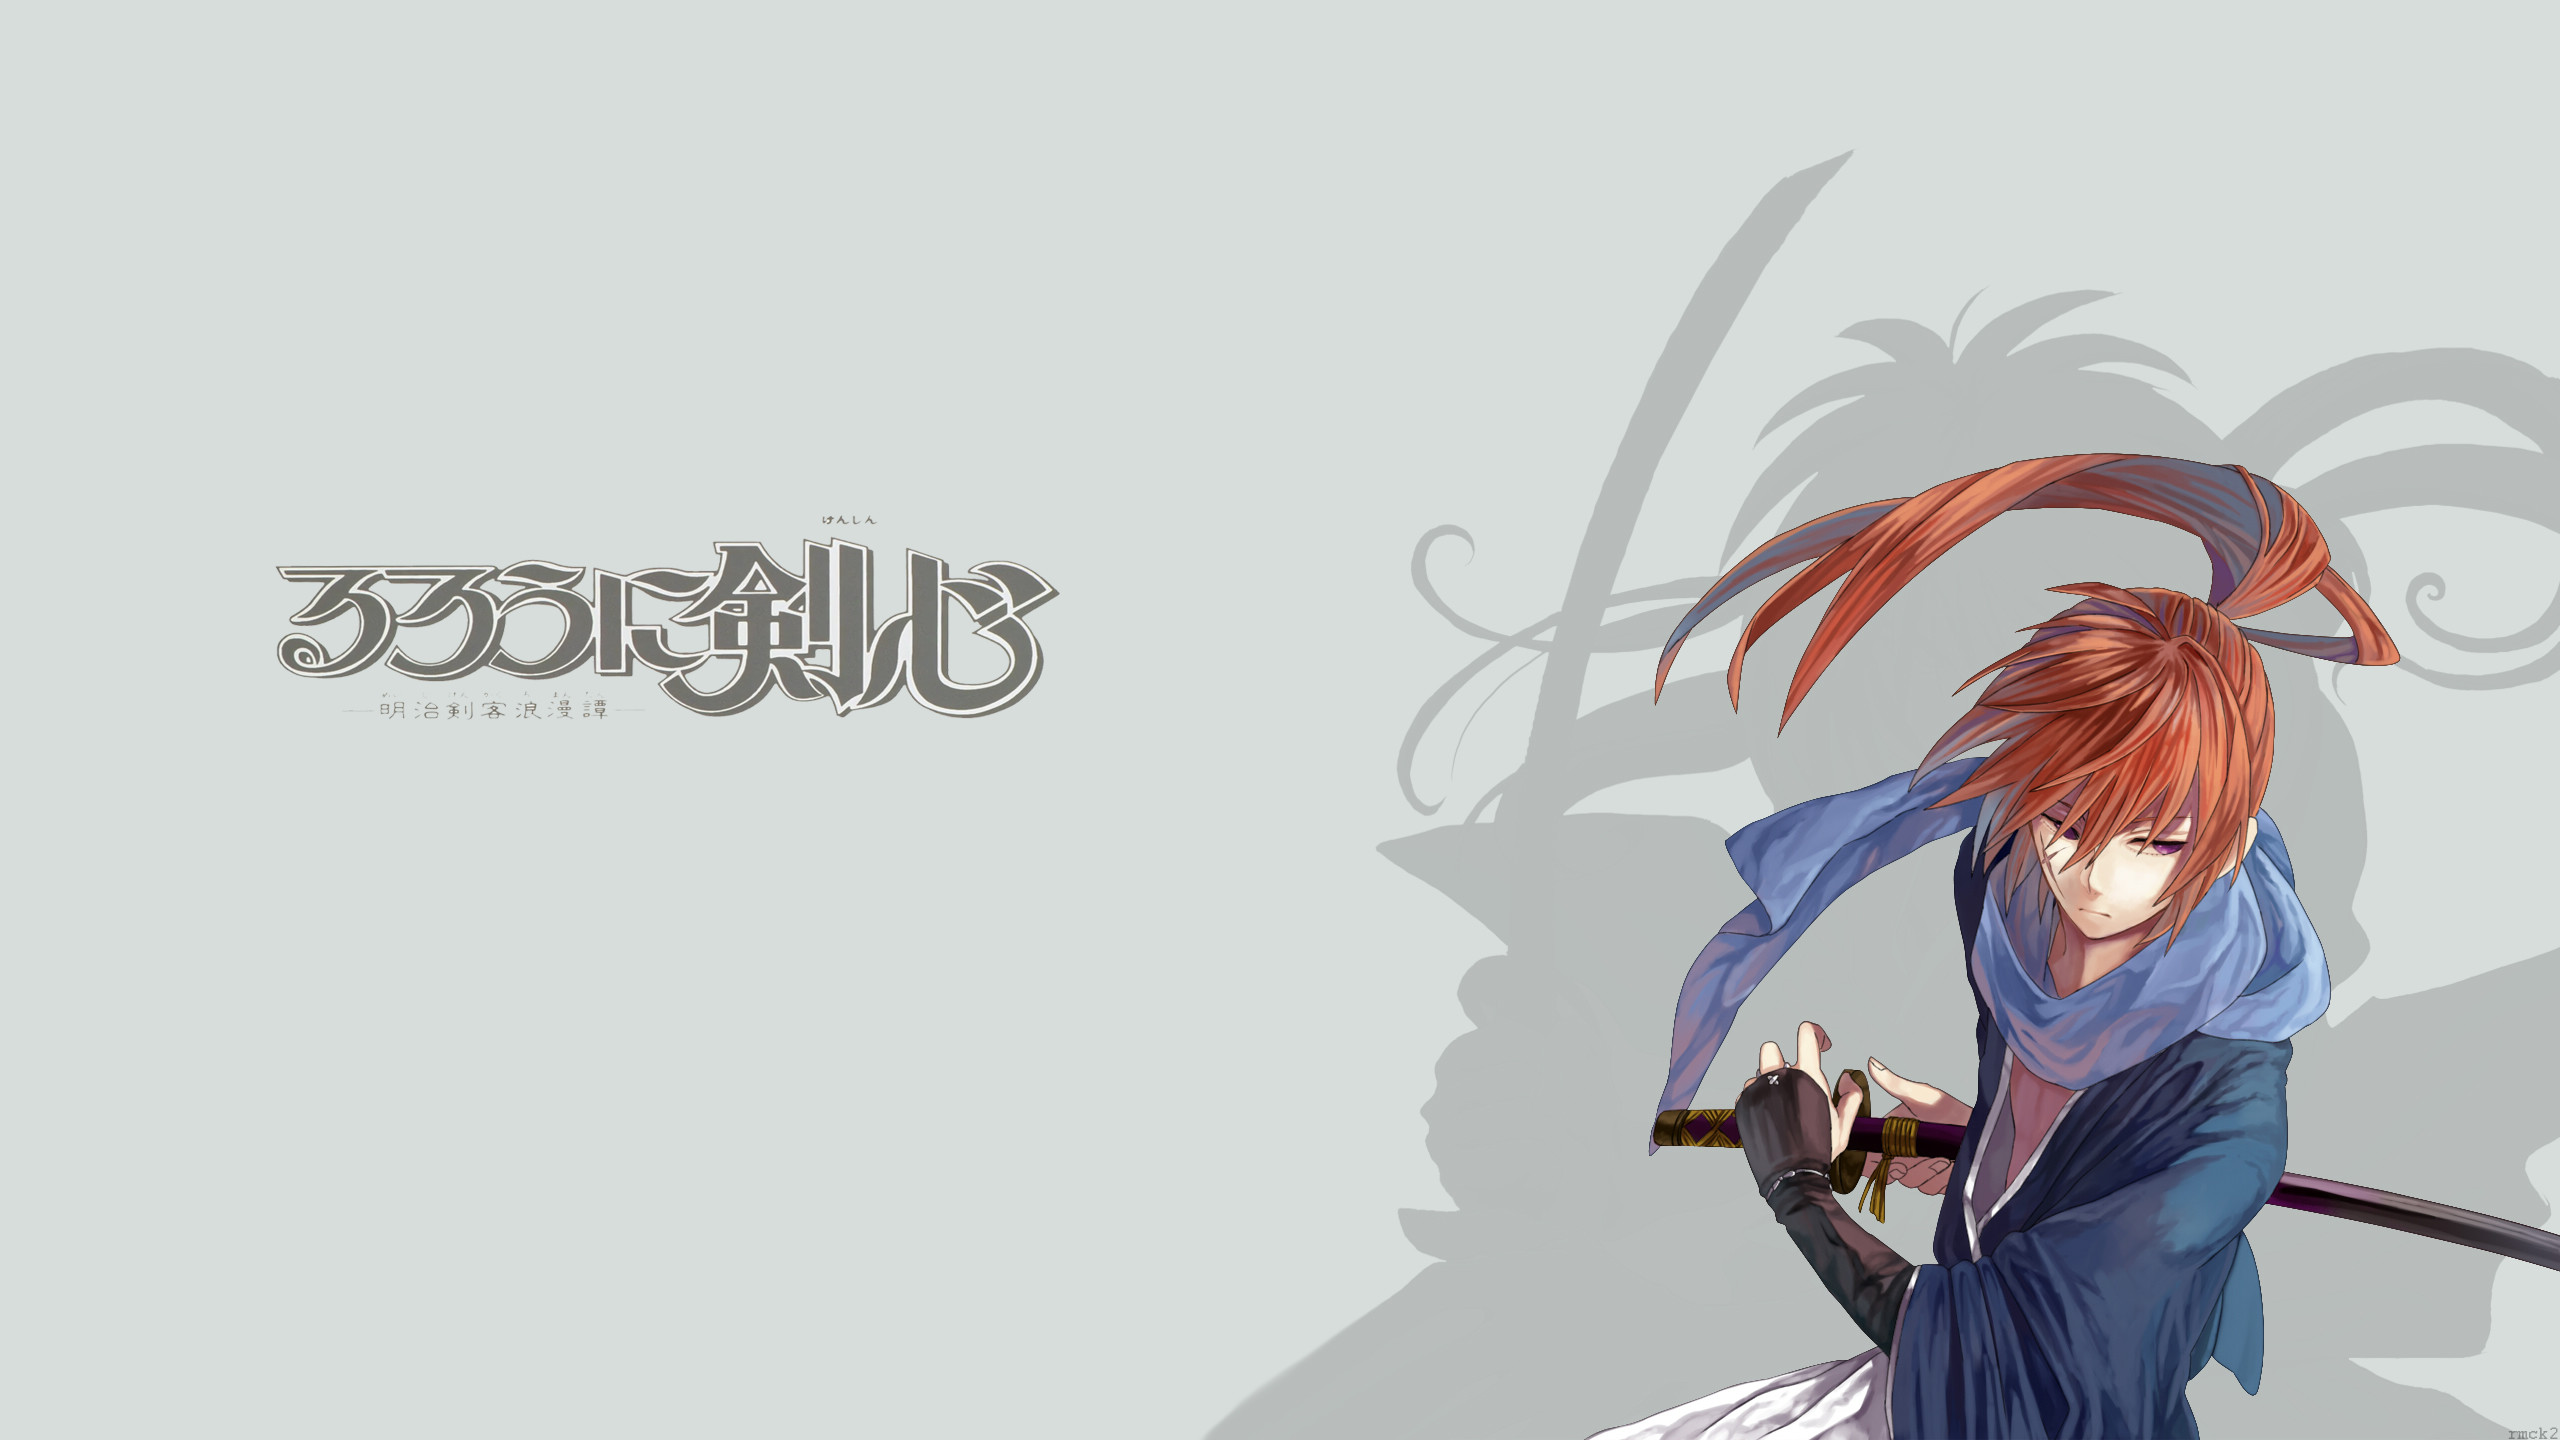 2560x1440 ... Rurouni Kenshin - Samurai X by rmck2